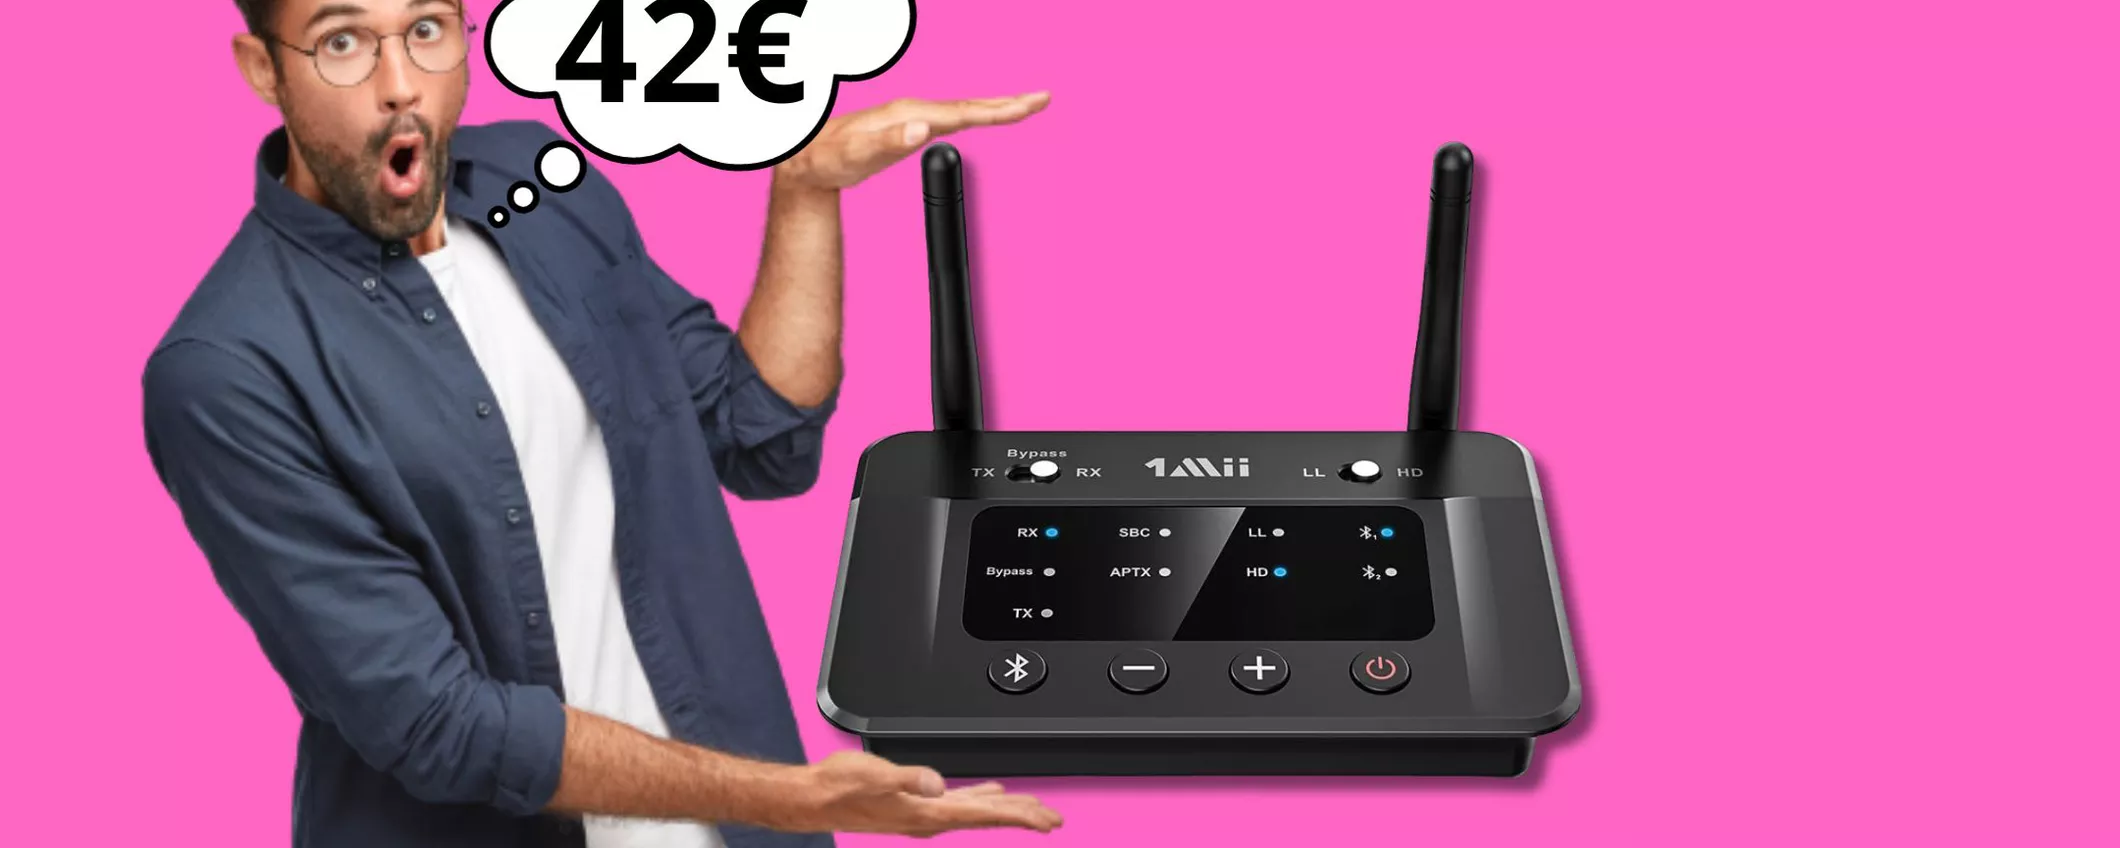 Trasmettitore Bluetooth 5.3 per TV e Pc a soli 42 euro!